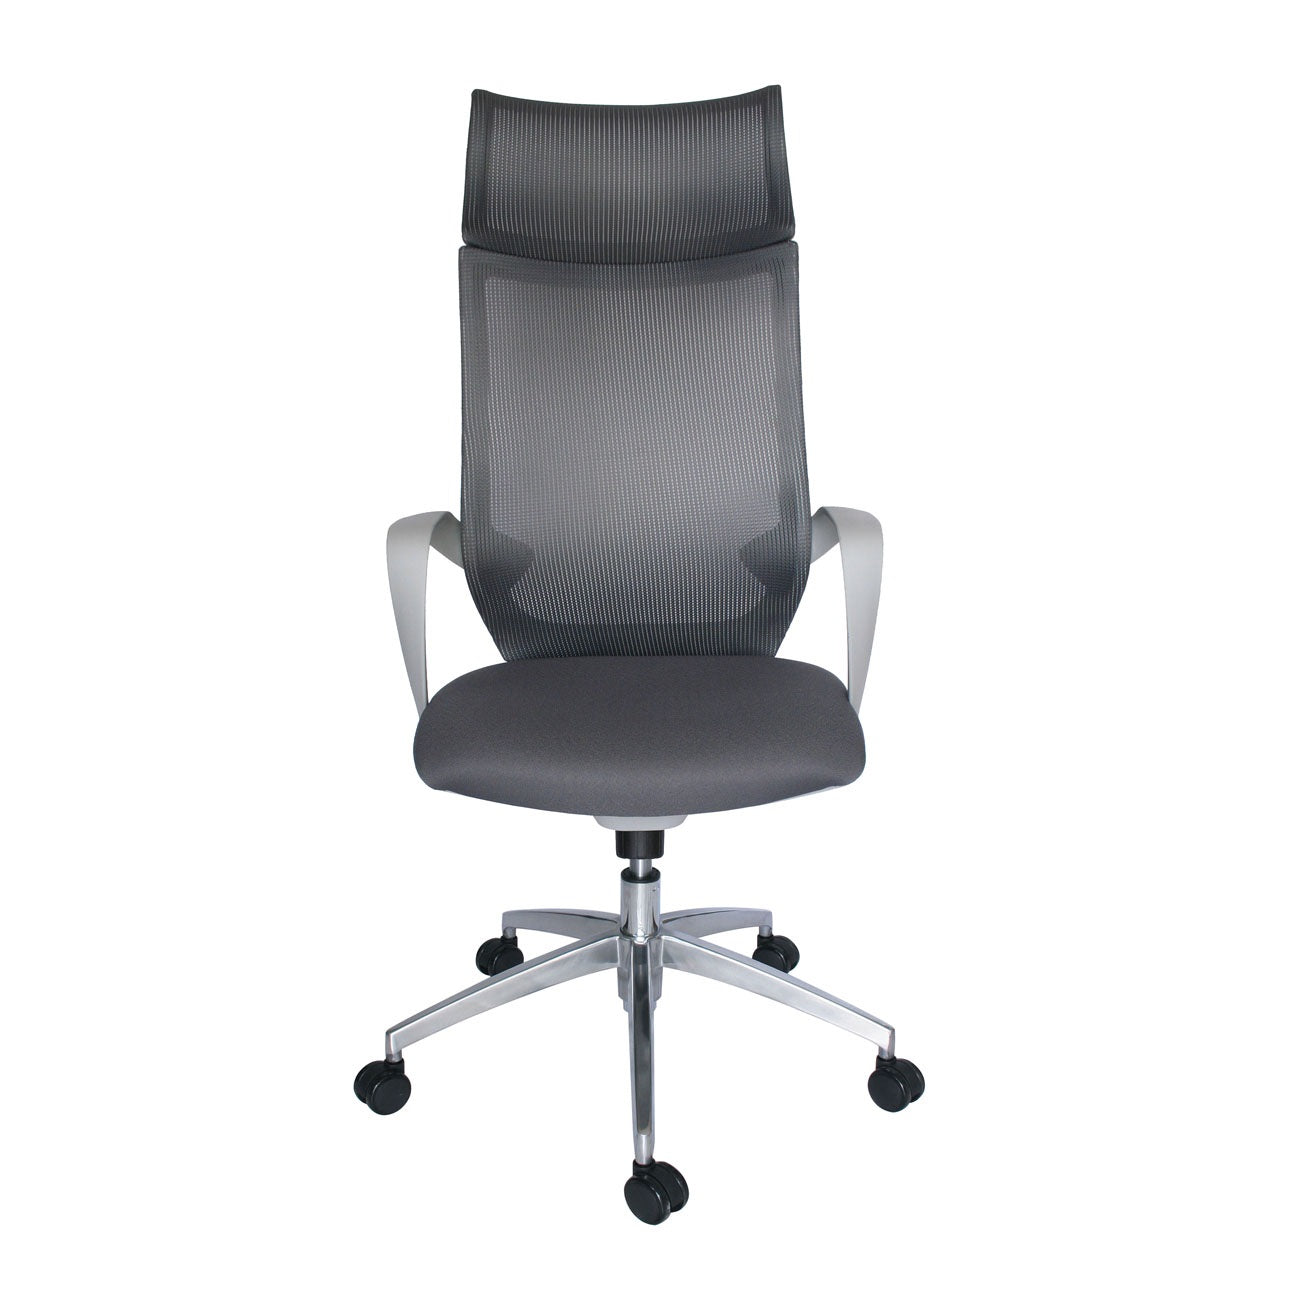 Sillón ejecutivo Equa OHE-185 respaldo y asiento tapizado en malla gris con base aluminio